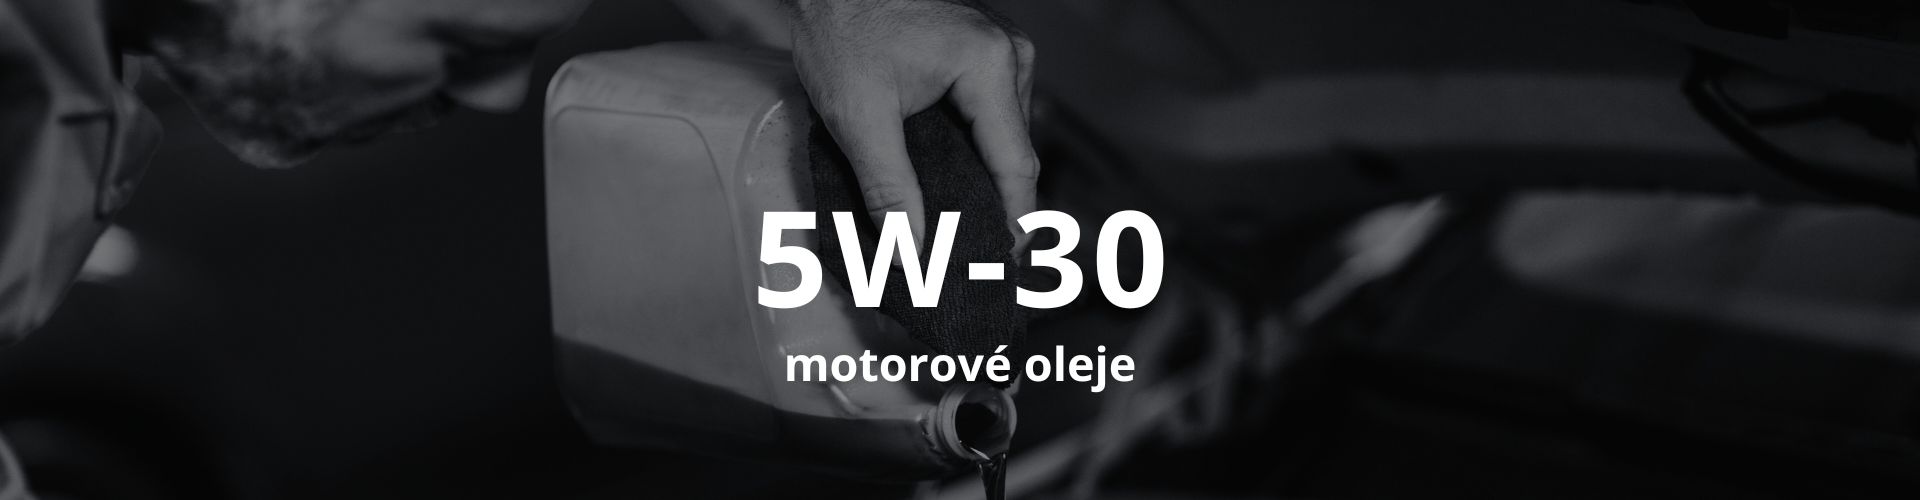 Motorové oleje 5W-30 SPEDOMAT